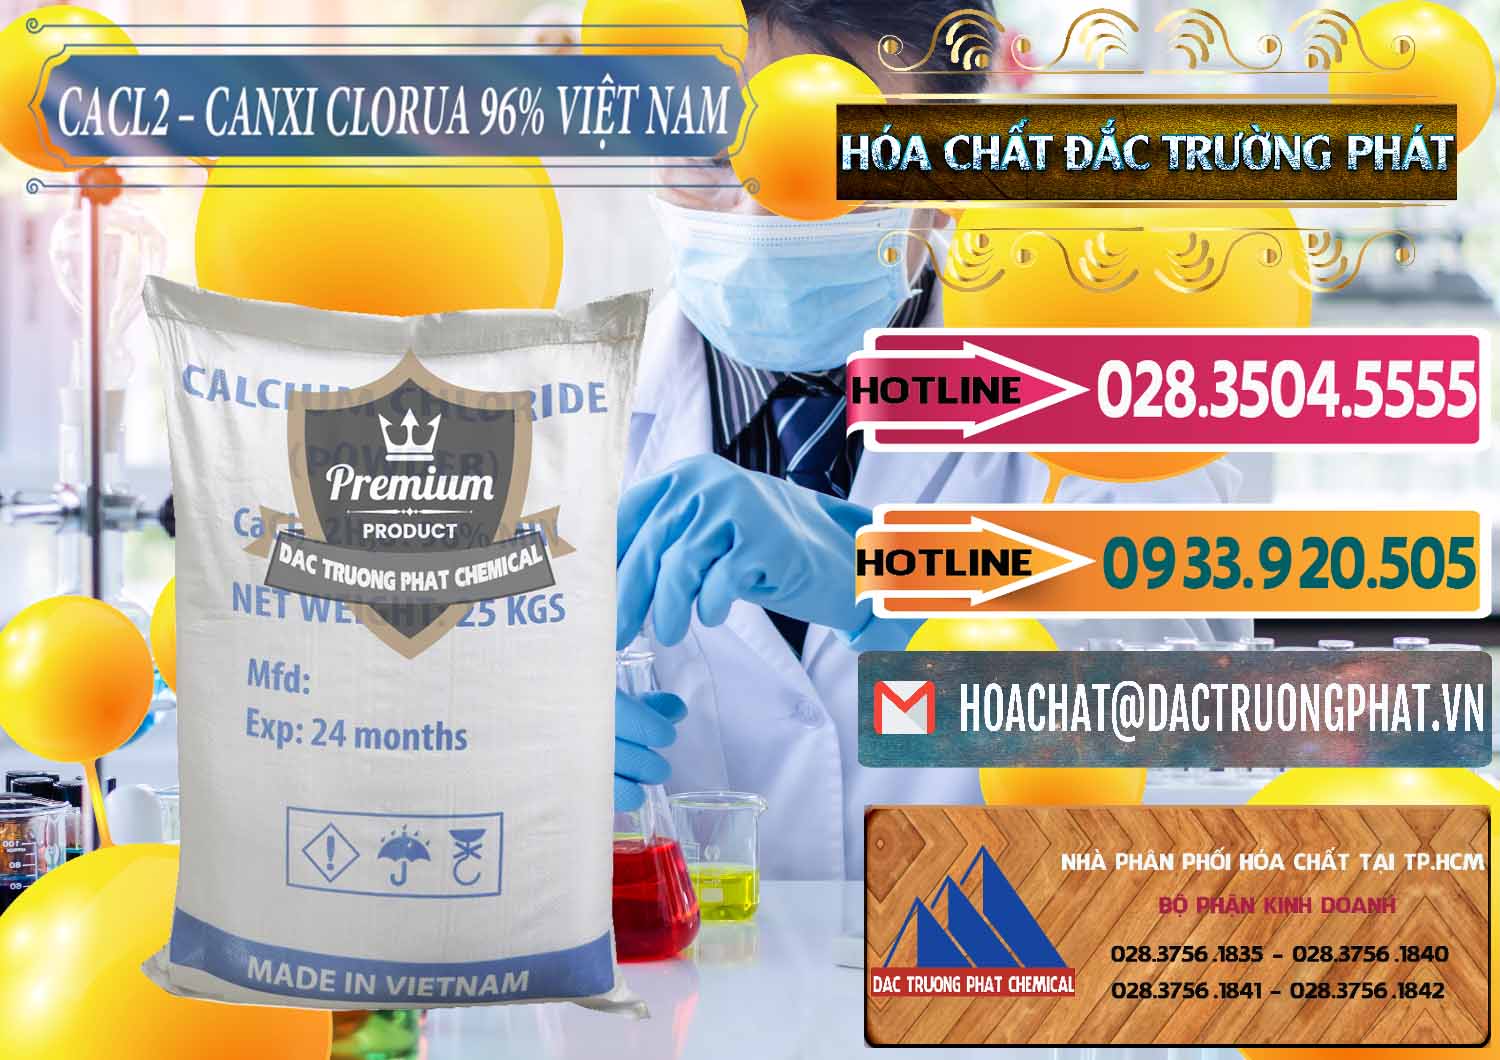 Nơi cung ứng ( phân phối ) CaCl2 – Canxi Clorua 96% Việt Nam - 0236 - Cty chuyên phân phối - cung ứng hóa chất tại TP.HCM - dactruongphat.vn